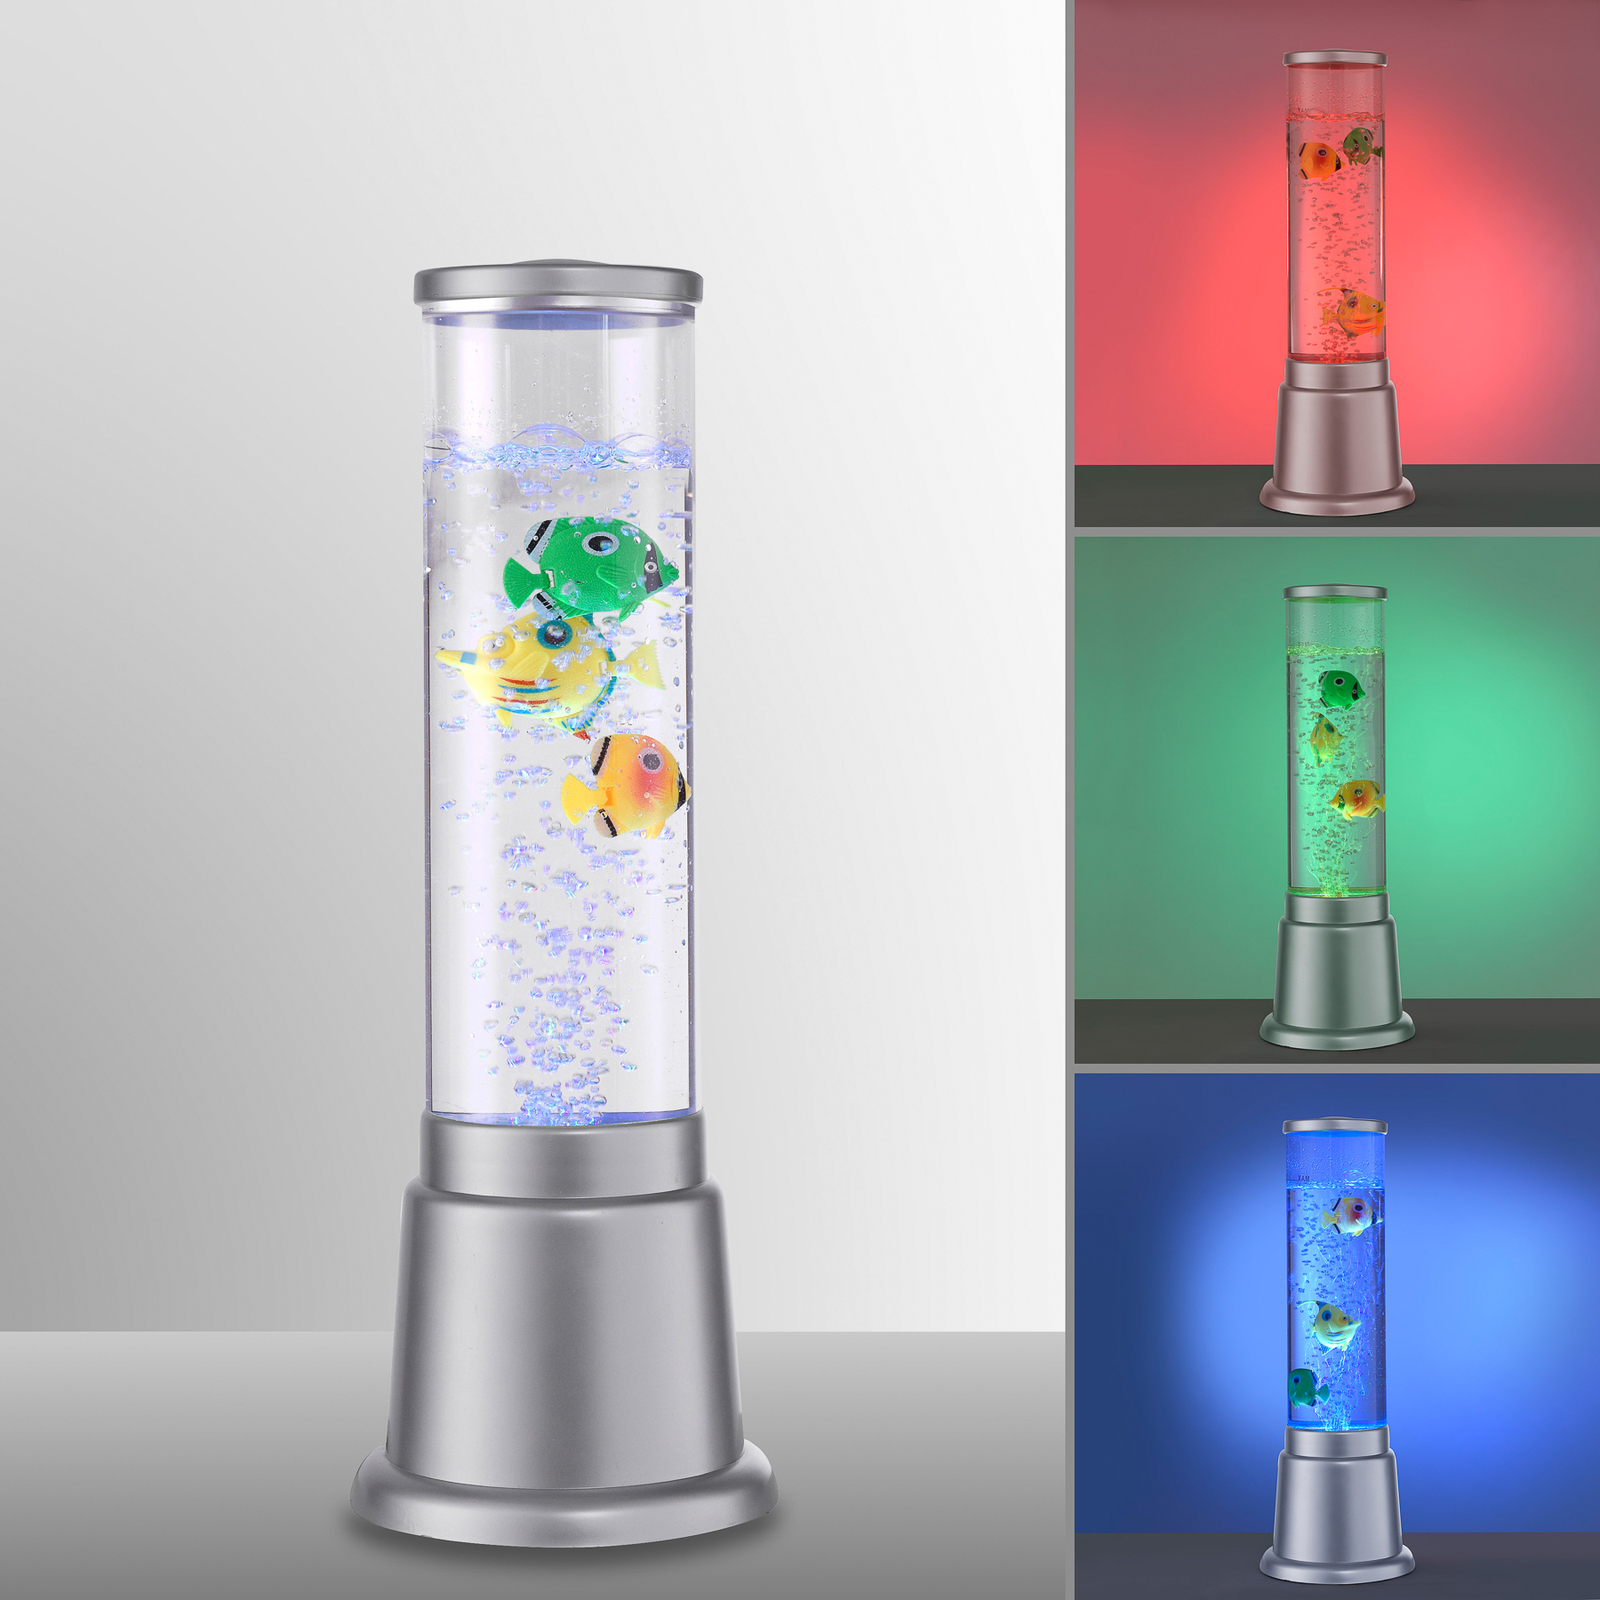 Ava ūdens kolonna ar LED diodēm un zivīm, augstums 36 cm